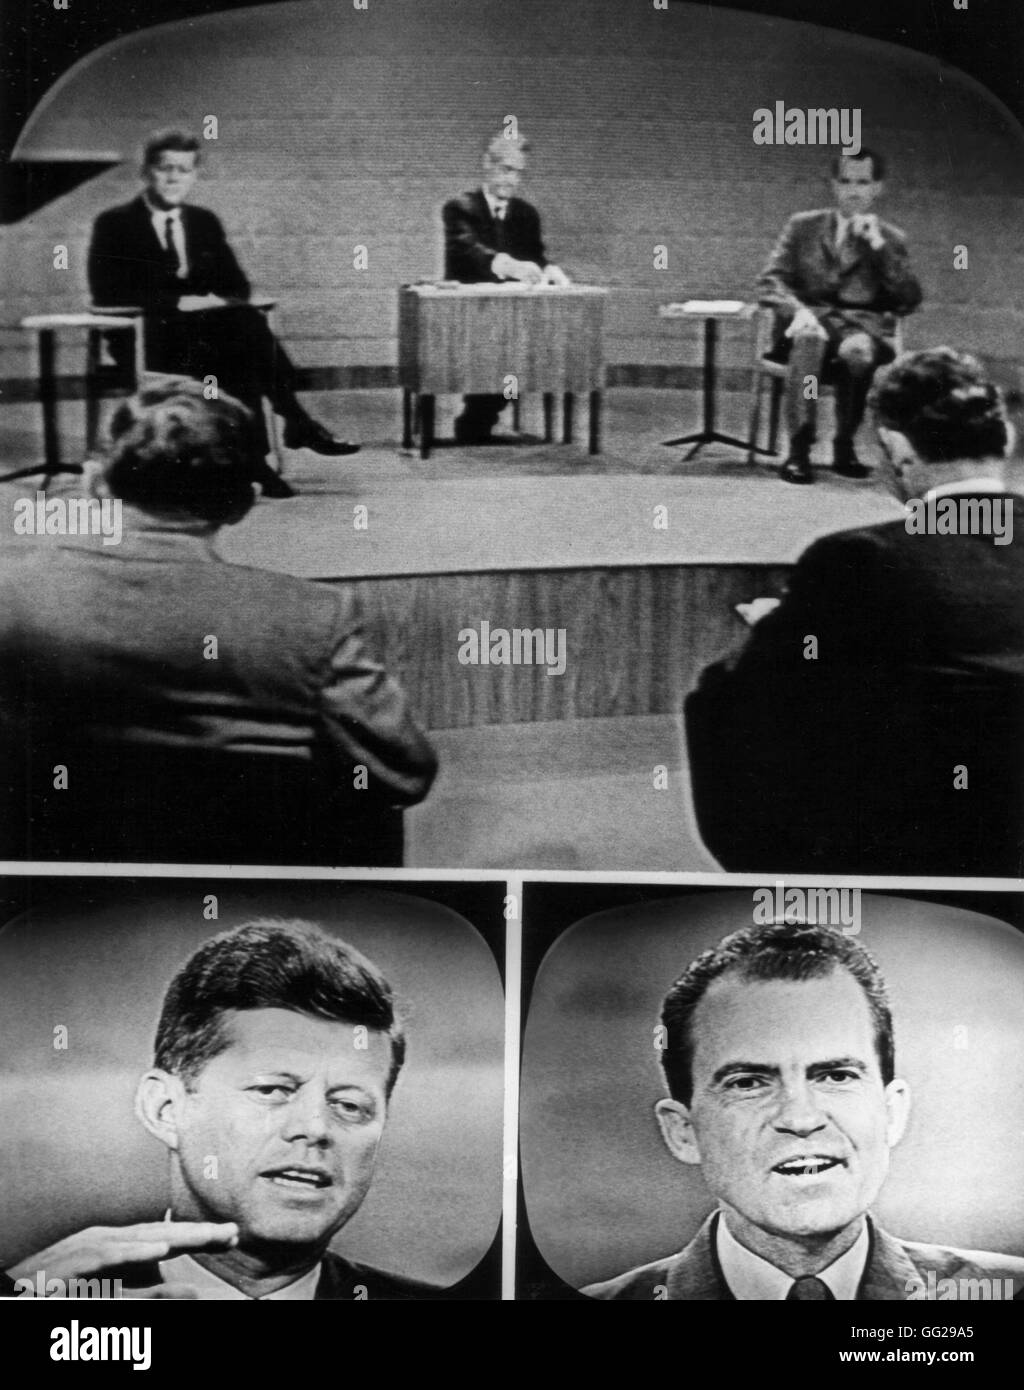 Campagne présidentielle. Débat télévisé entre John F. Kennedy et Richard Nixon, le 26 septembre 1960 United States National archives. Washington Banque D'Images